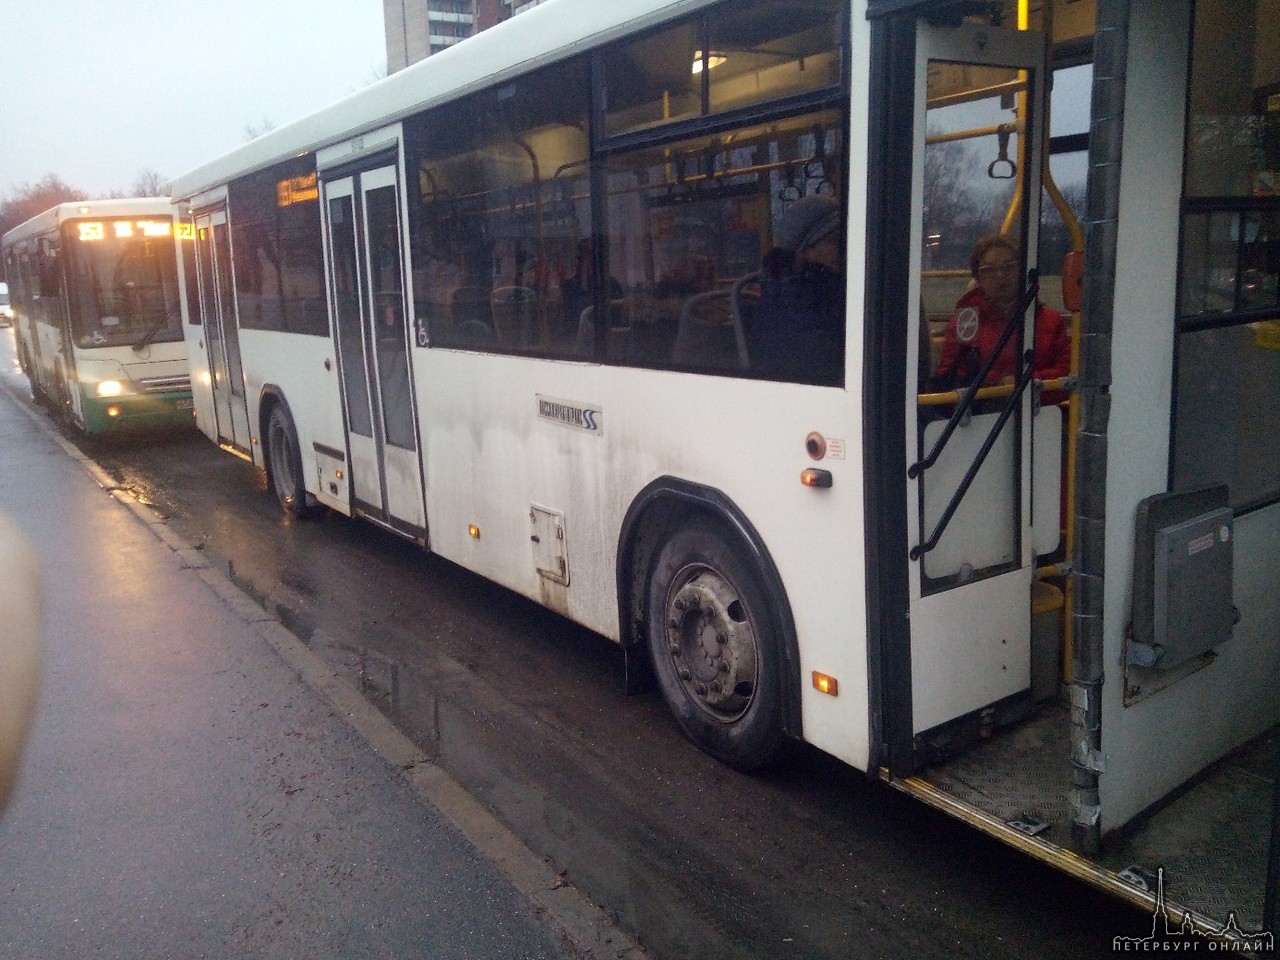 Дтп на Меншиковском проспекте, выезд на пр. Непокорённых по встречке, автобусы 153 маршрута встали.